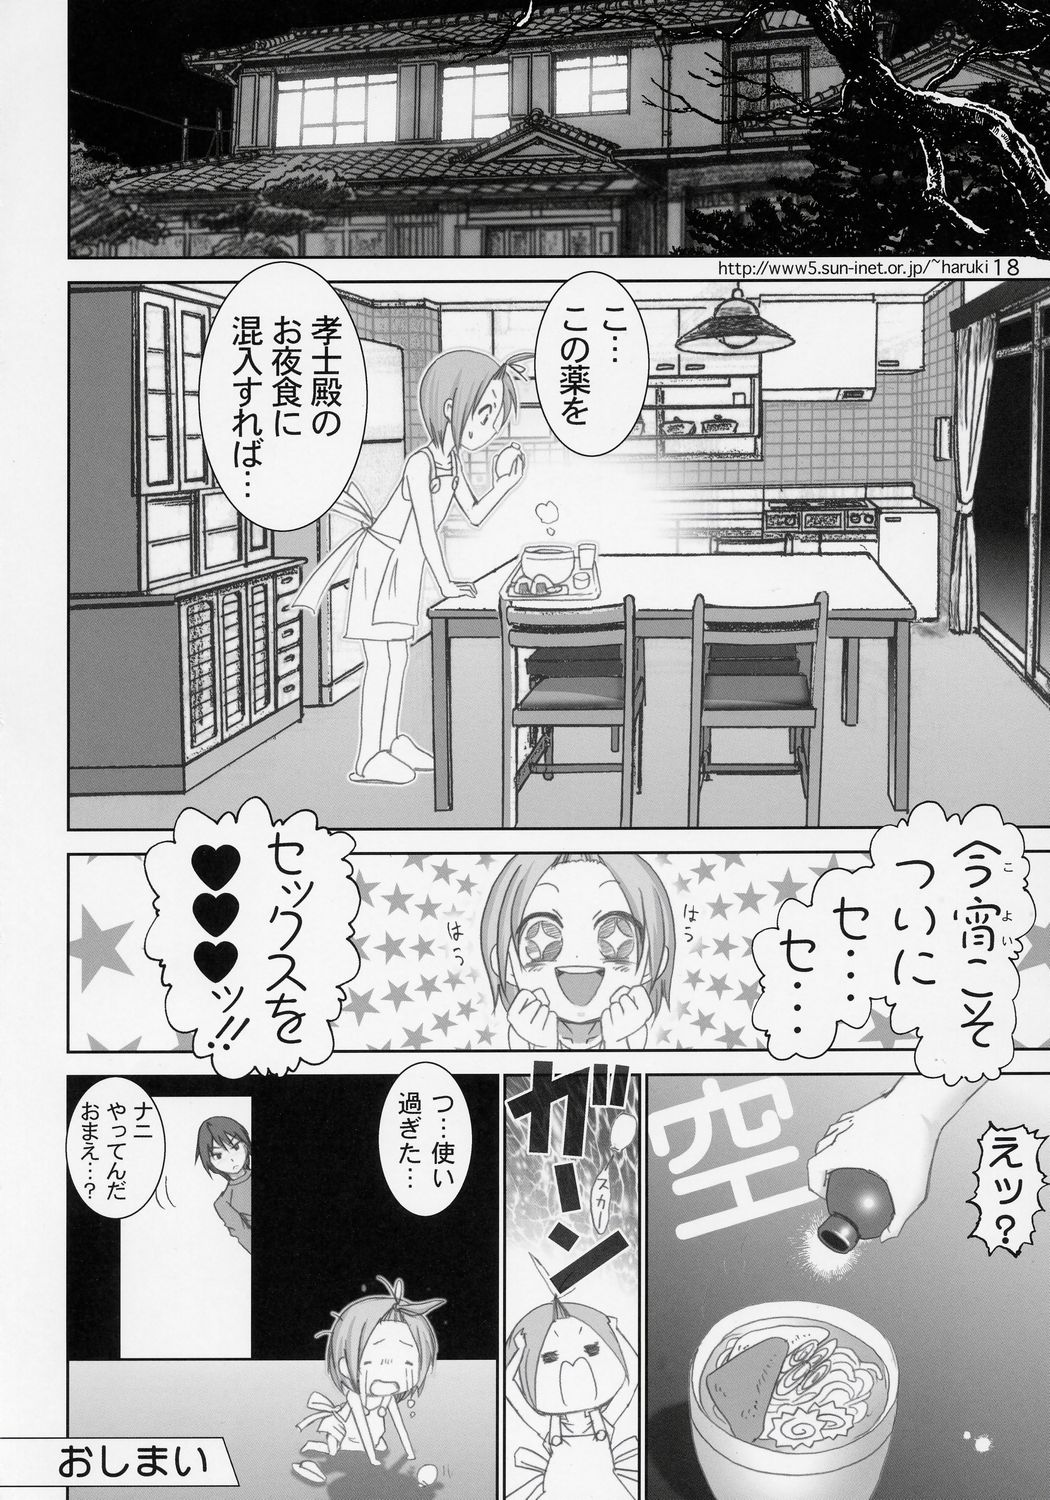 [RaijinKai (Haruki Genia)] Zumomo (sumomo) page 18 full